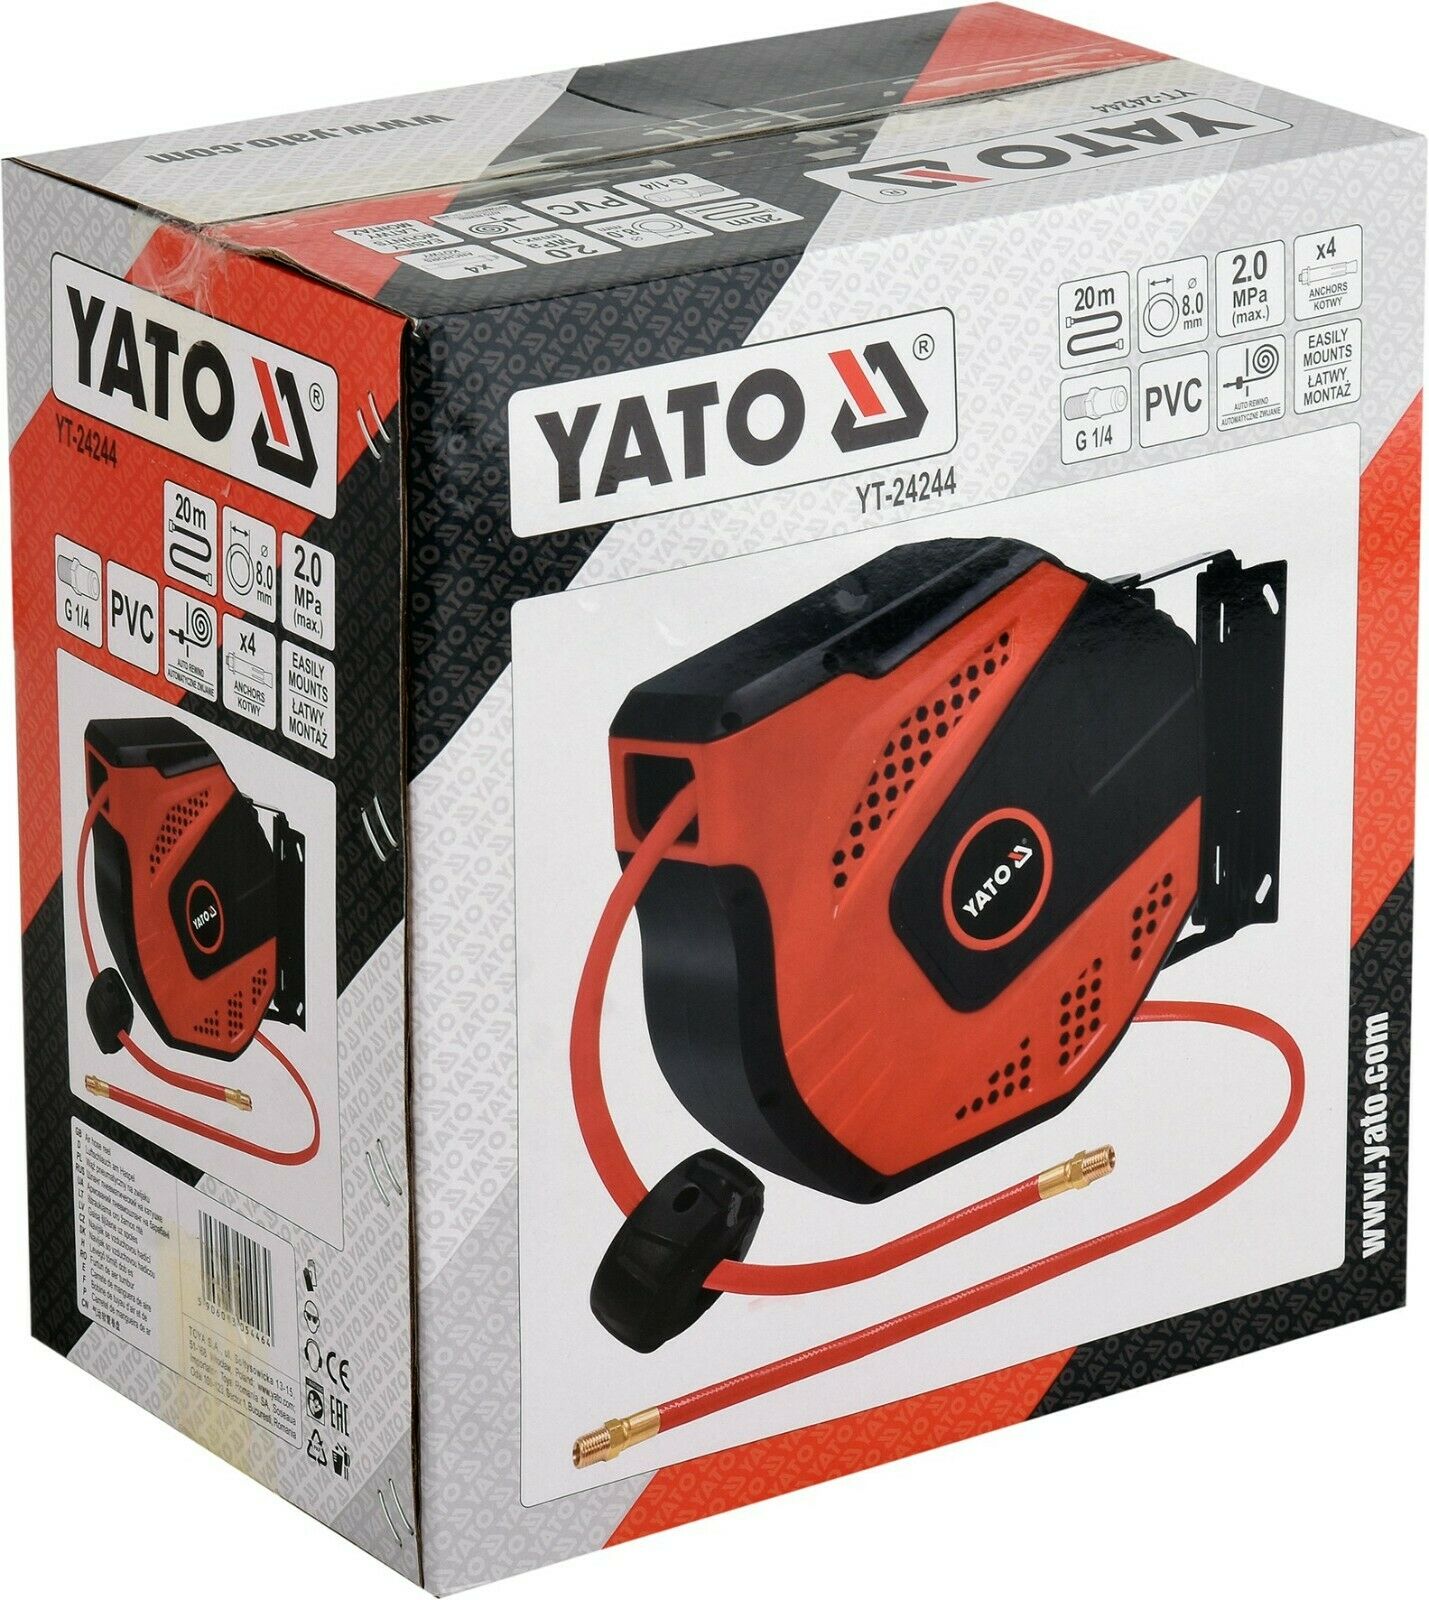 Yato Druckluft Schlauchtrommel 1/4" 8mm Automatik Schlauchaufroller 20m Spule - Flex-Autoteile